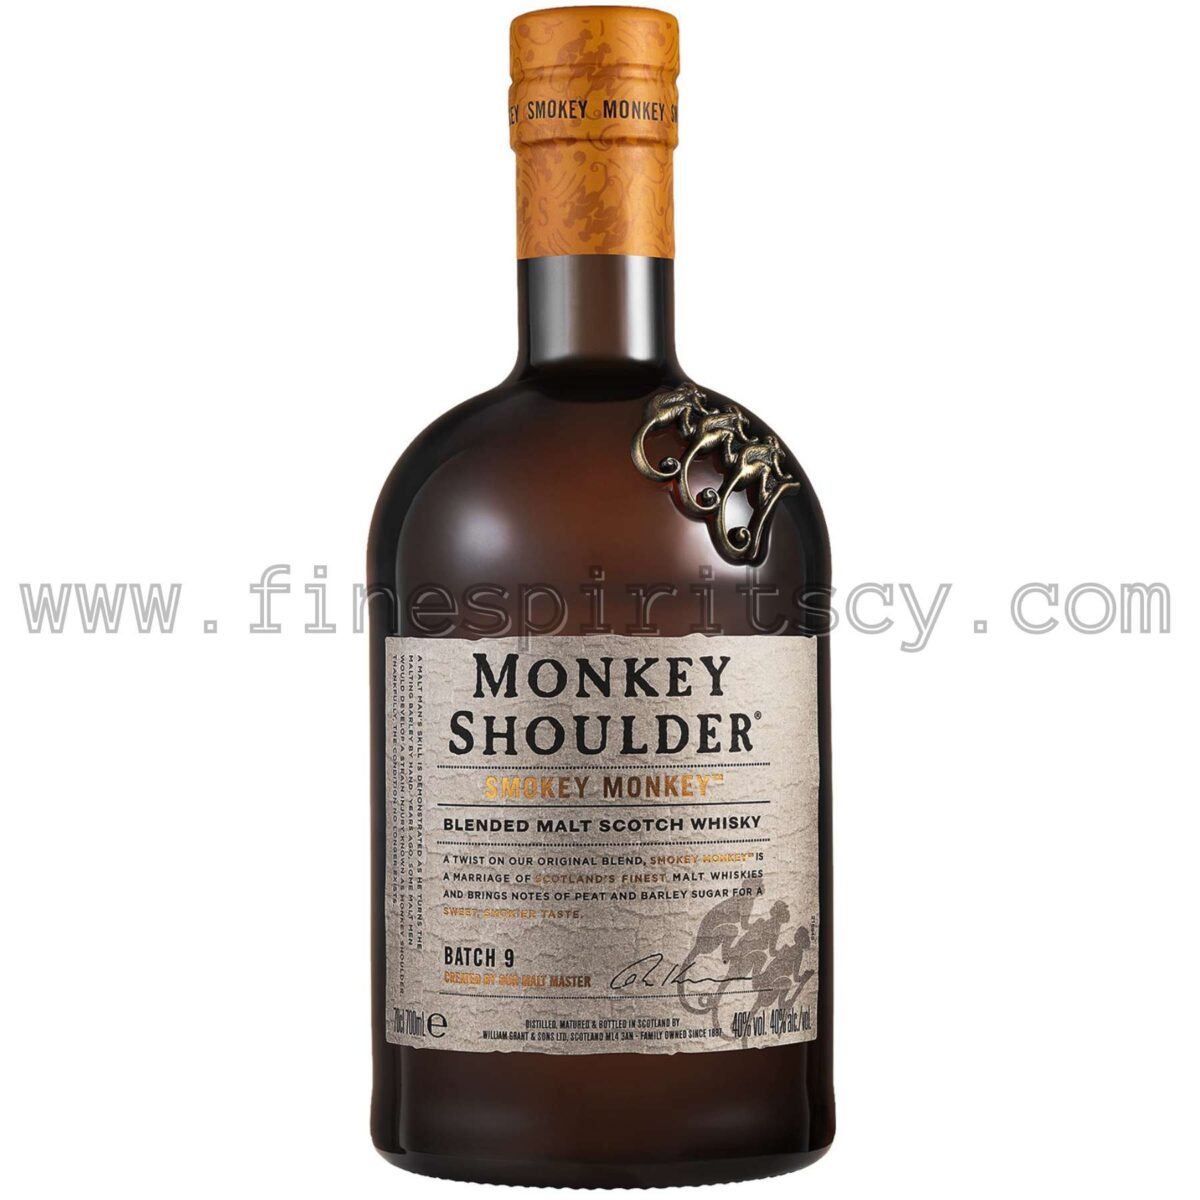 Monkey Shoulder Smokey Monkey Blended Malt Scotch Whisky Cyprus Price